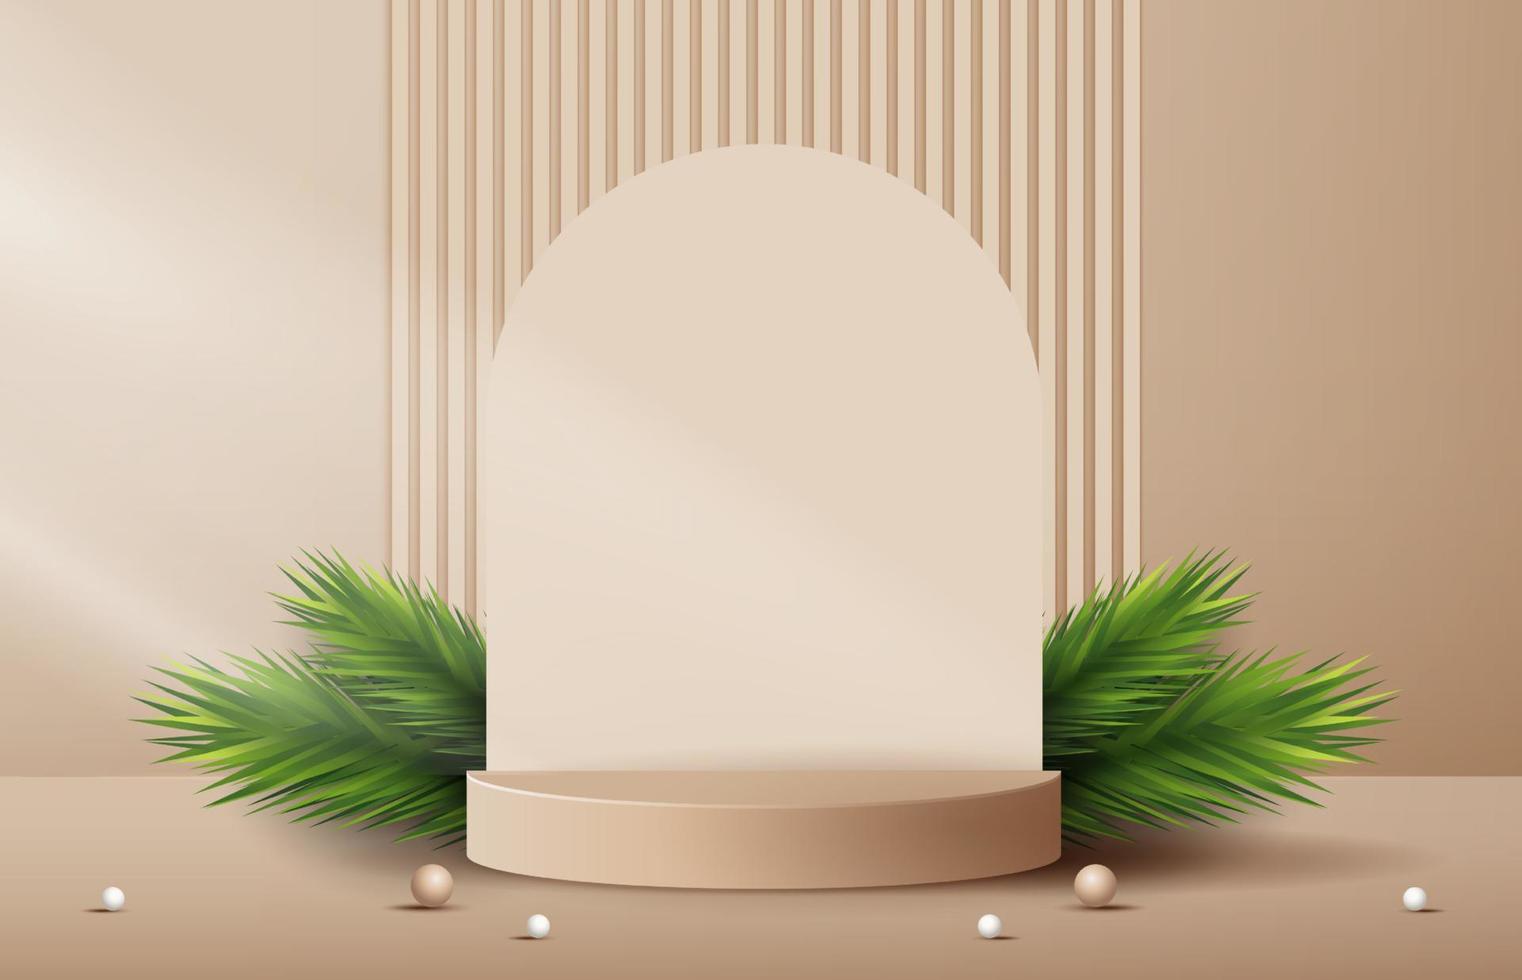 forme de podium pour afficher l'affichage de produits cosmétiques pour le jour de noël ou le nouvel an. stand vitrine de produit sur fond marron avec arbre de noël. conception de vecteur